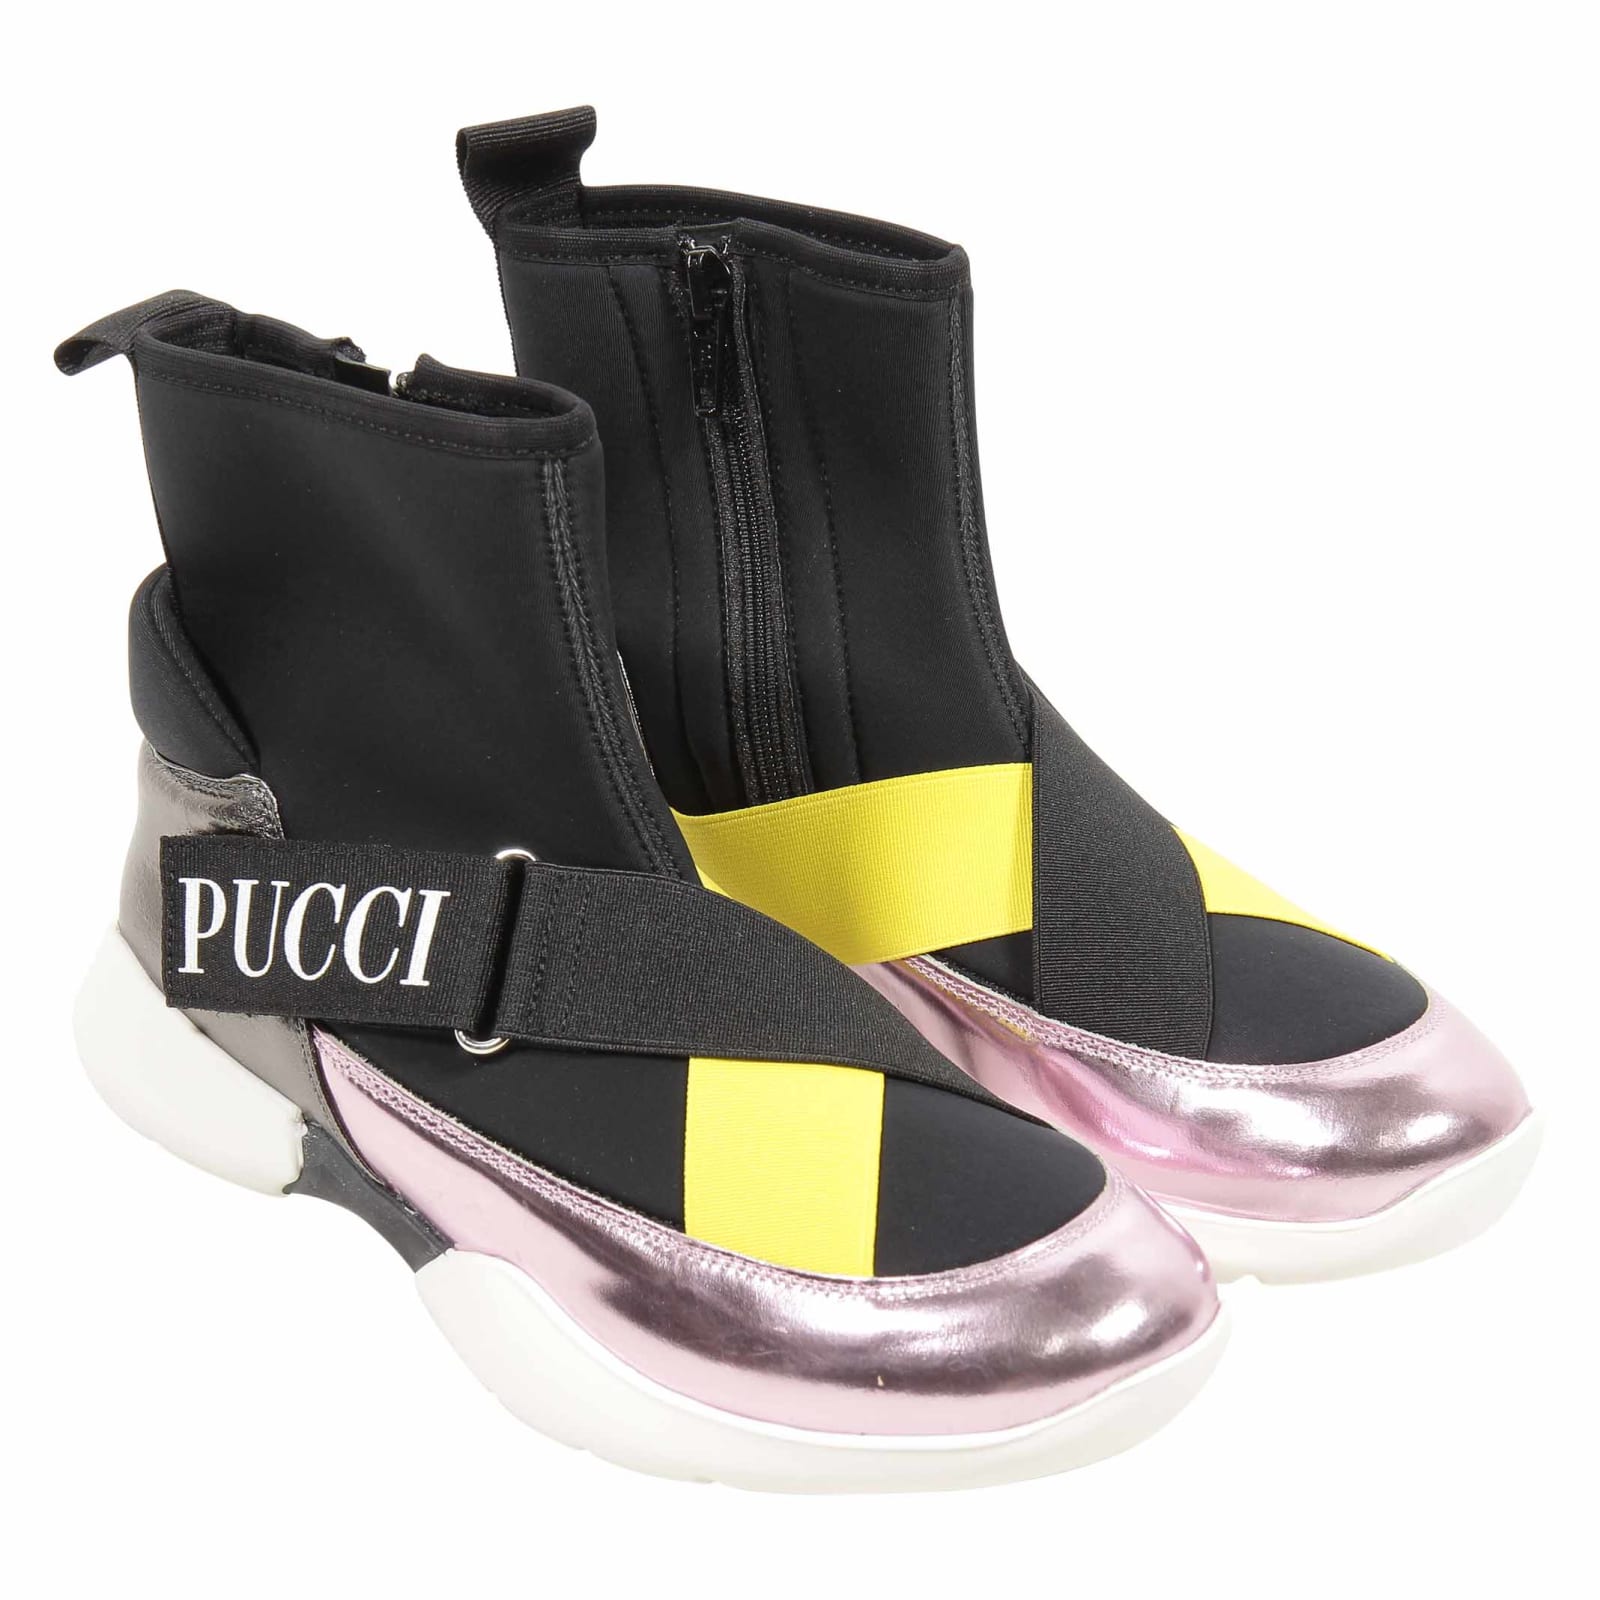 Emilio Pucci Shoes